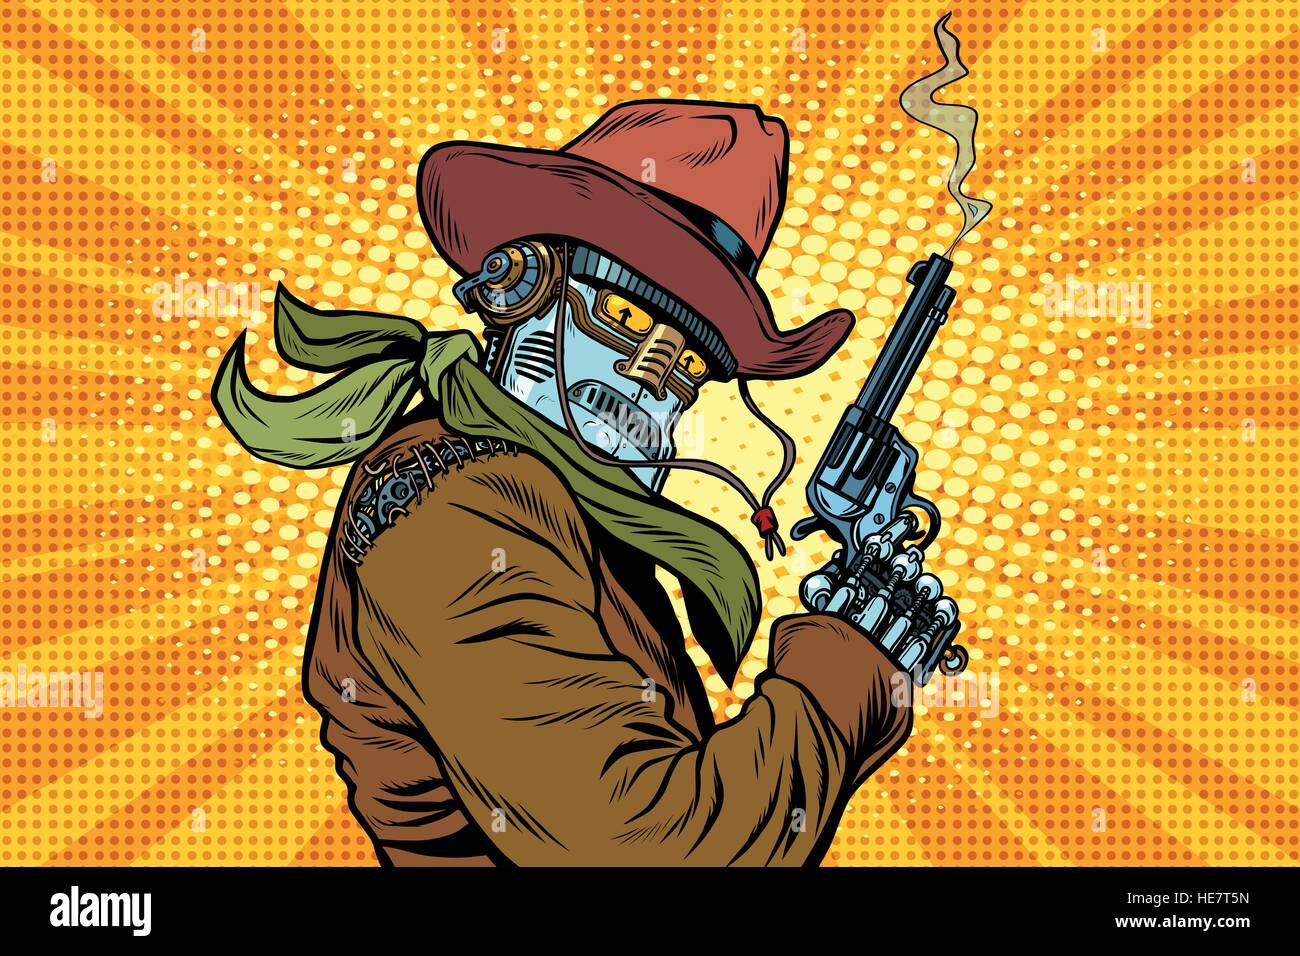 Steampunk-Roboter-Cowboy mit dem Rauchen nach dem Brand eines Revolvers Stock Vektor